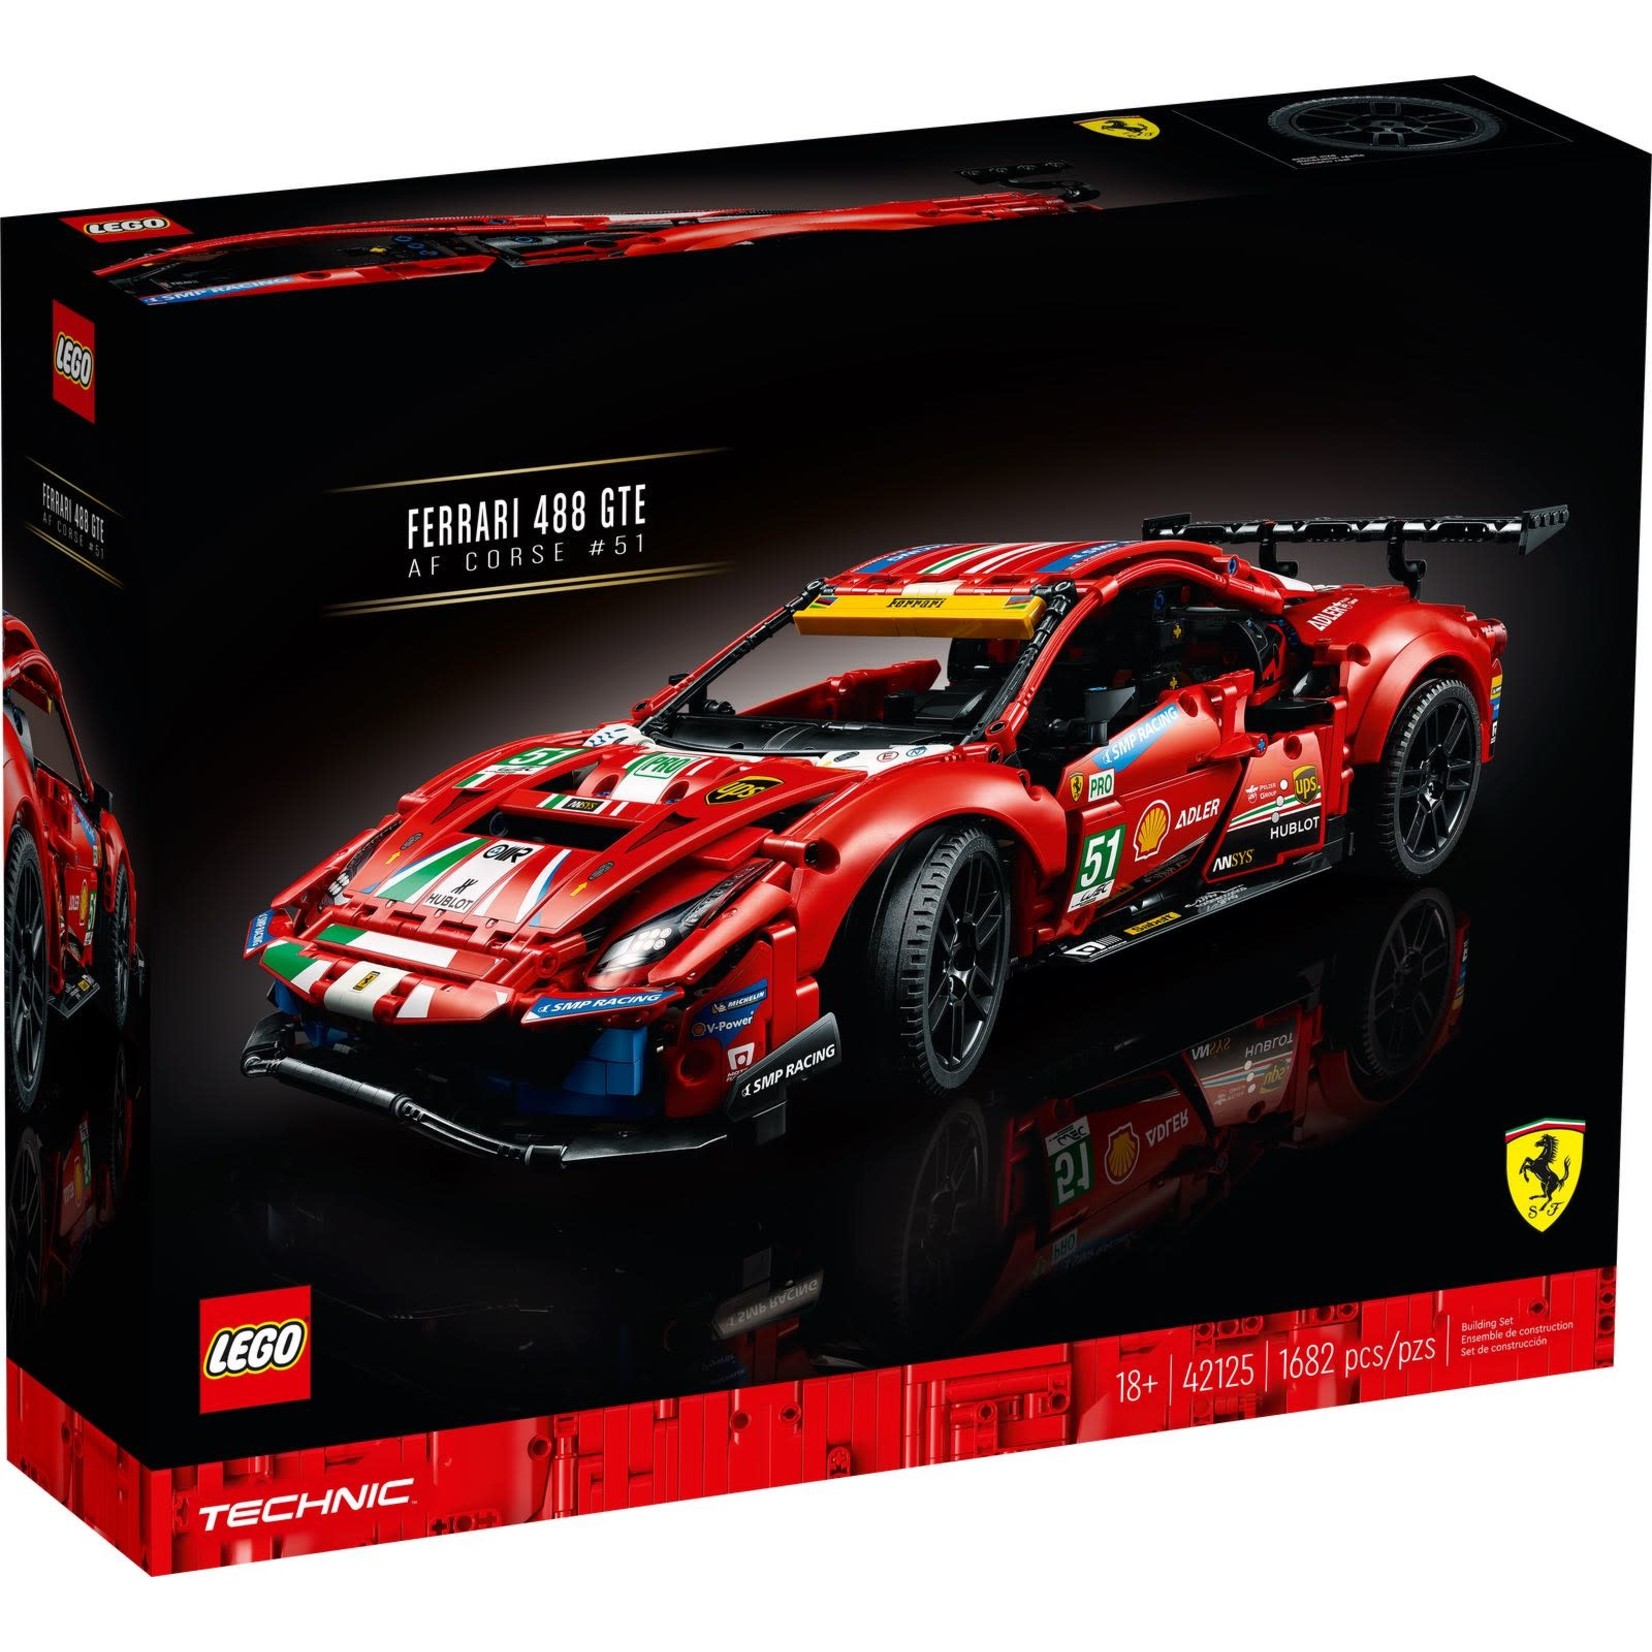 LEGO LEGO Technic Ferrari 488 GTE “AF Corse #51” 42125